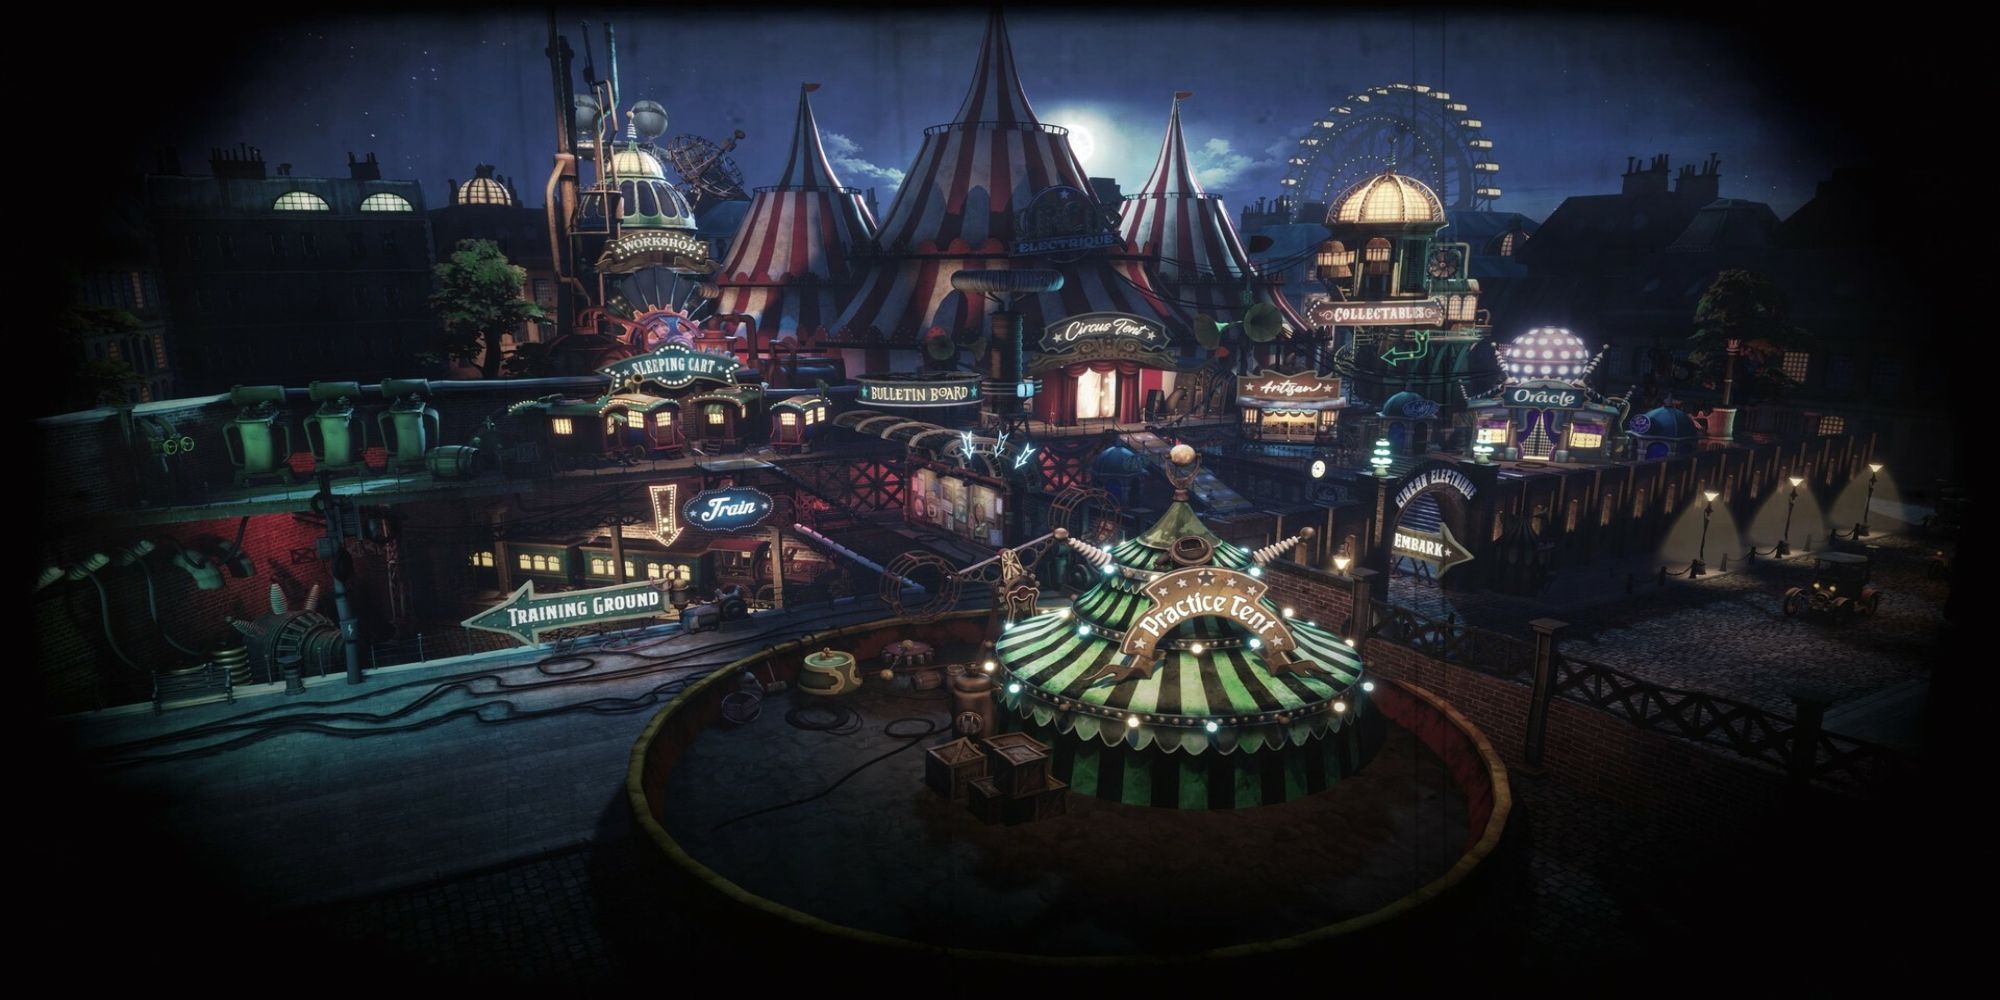 Circus Electrique - Circus